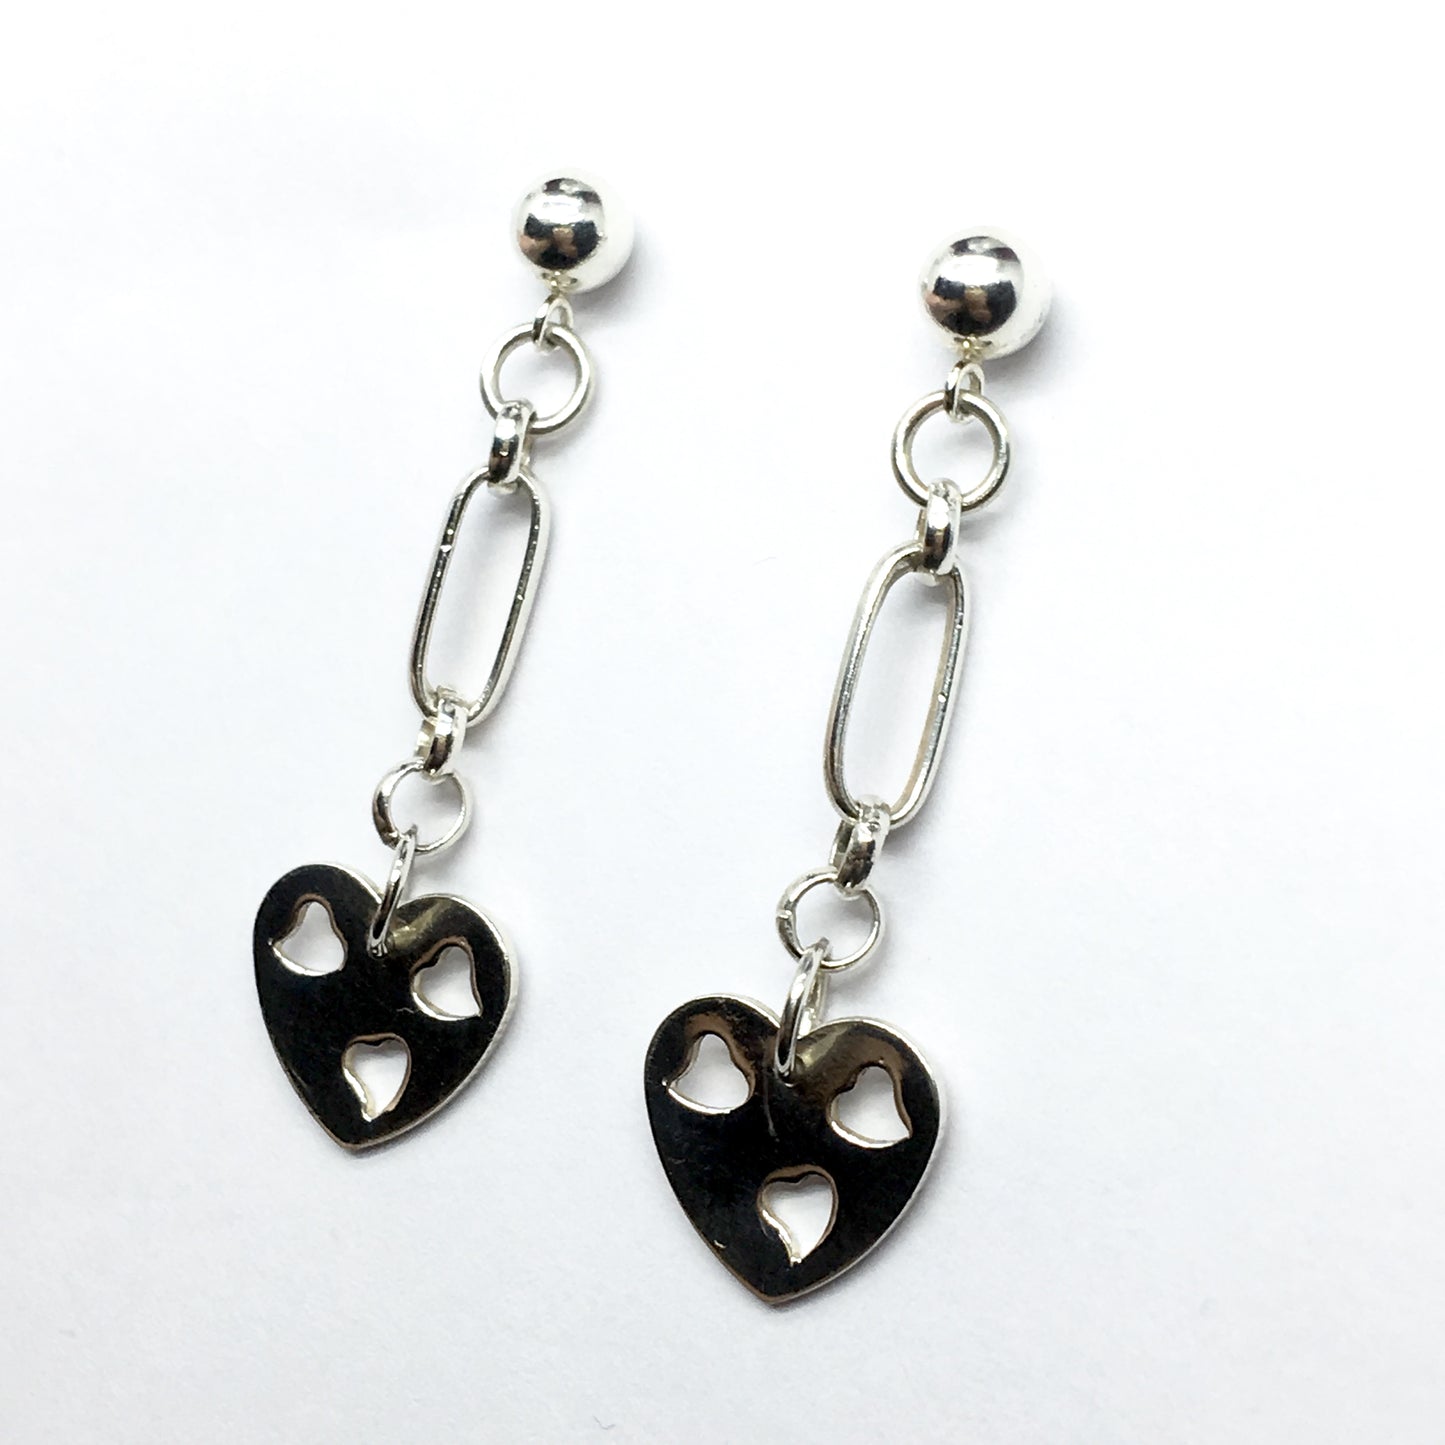 Earrings | Fun Flirty Sterling Silver Heart Cut-out Design Dangle Earrings - Blingschlingers Jewelry online